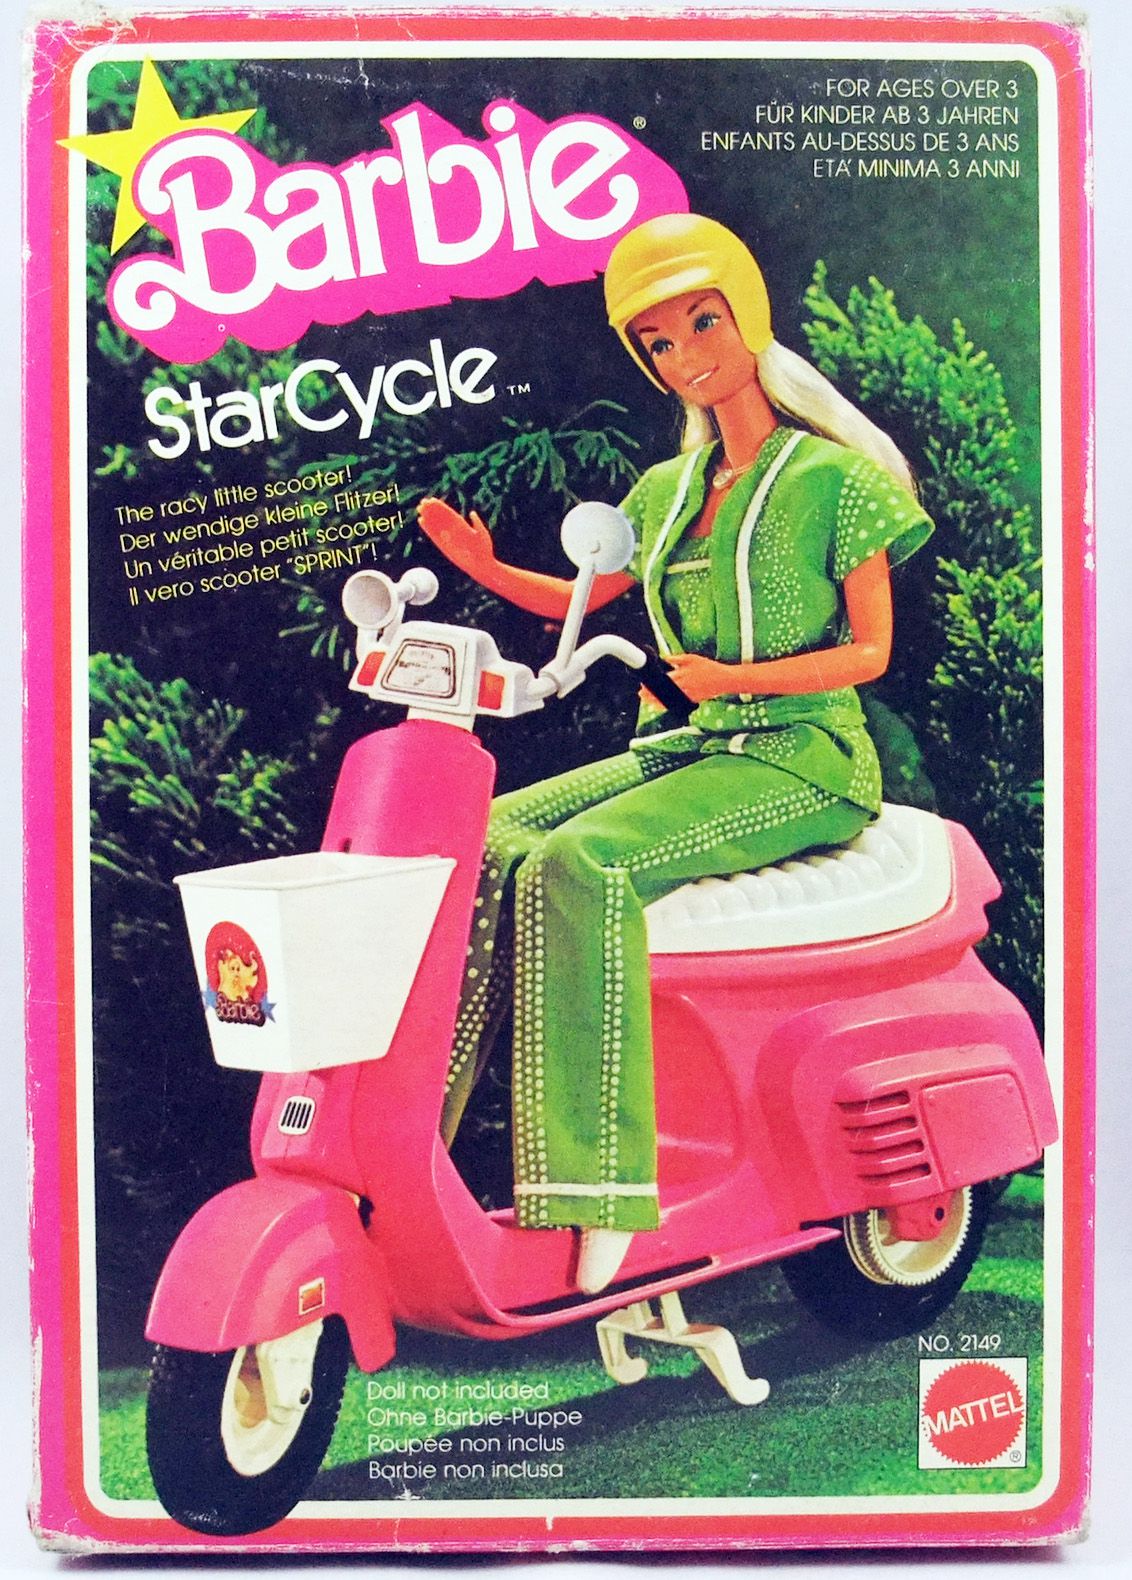 Barbie filles scooter hauteur 78 cm